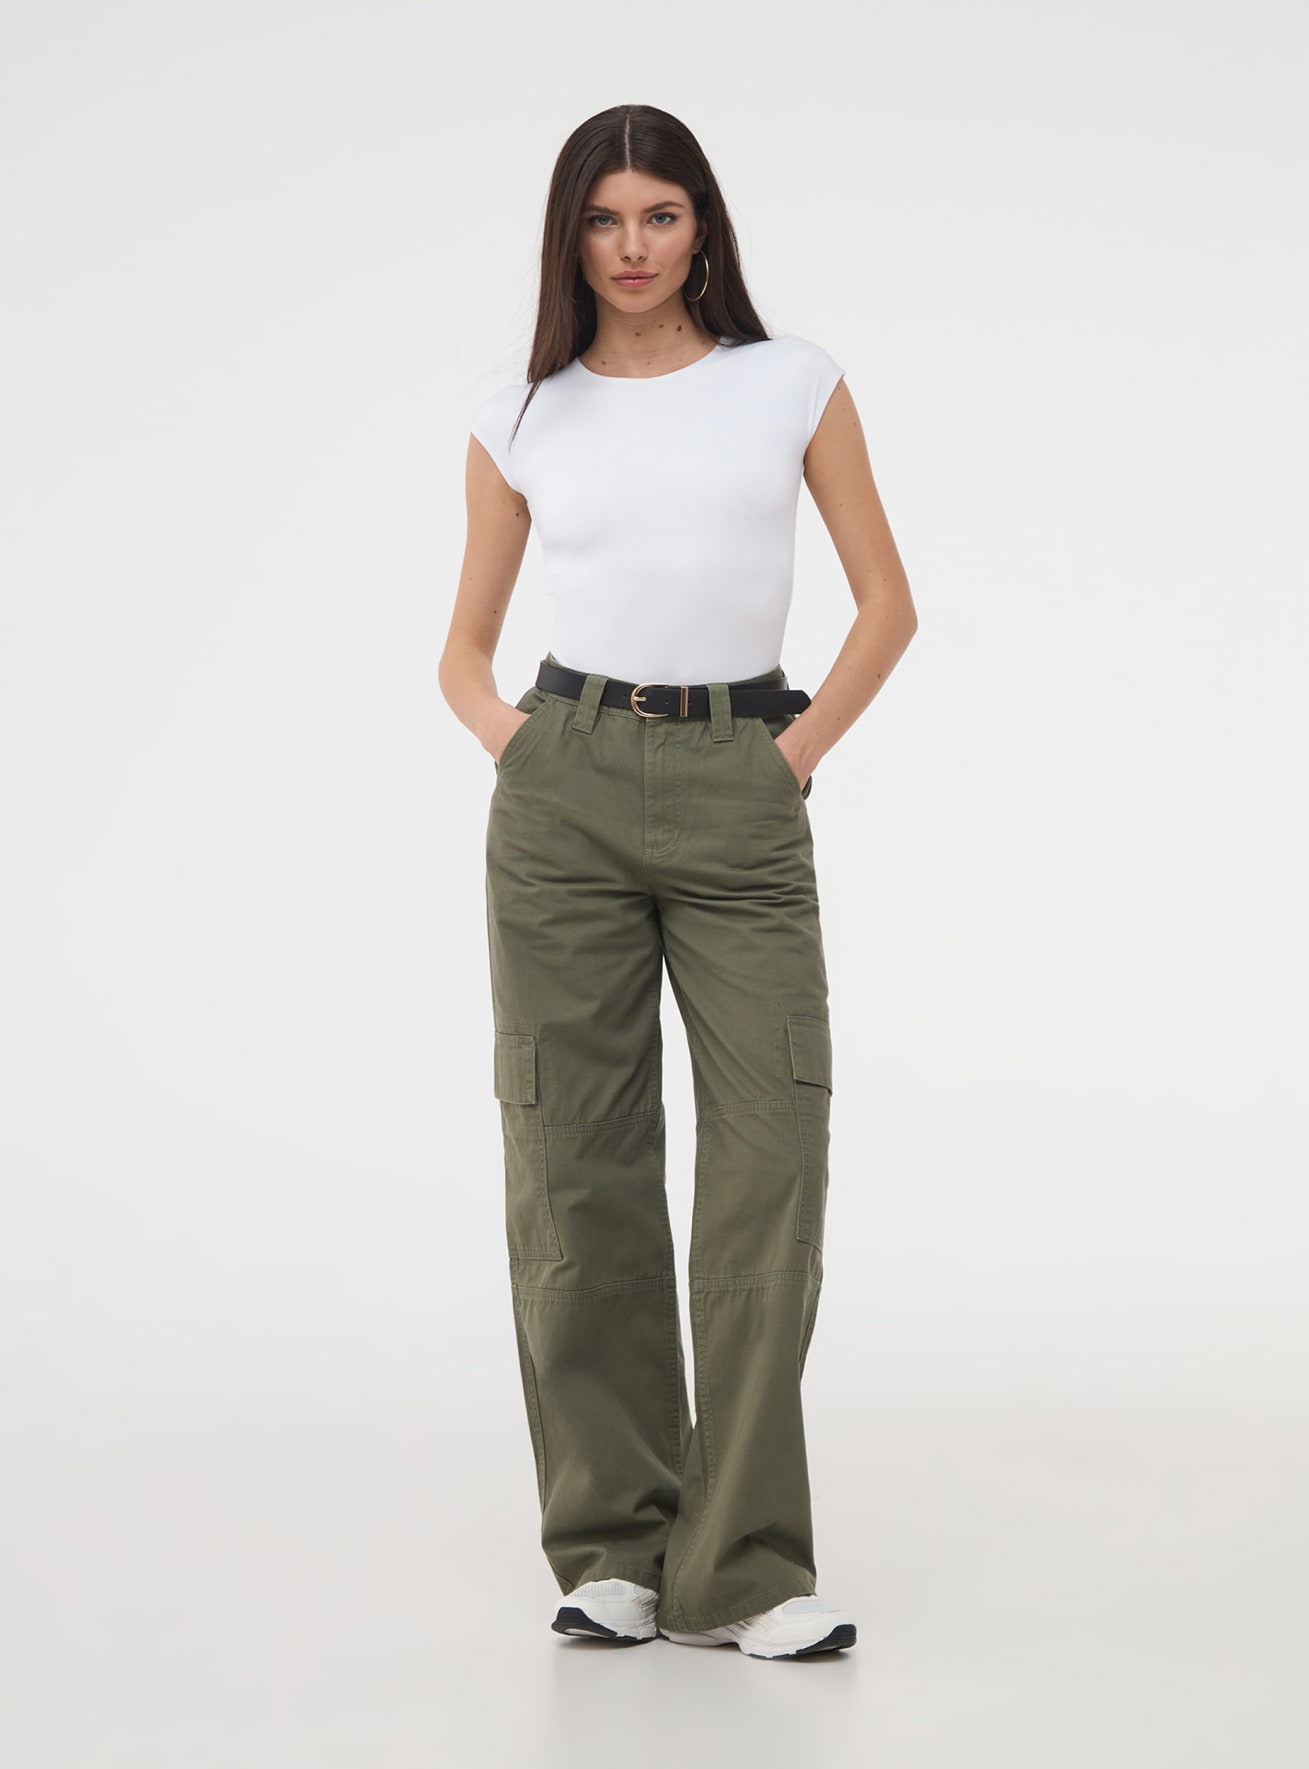 Pantalón Mujer Cargo Verde, Compra en